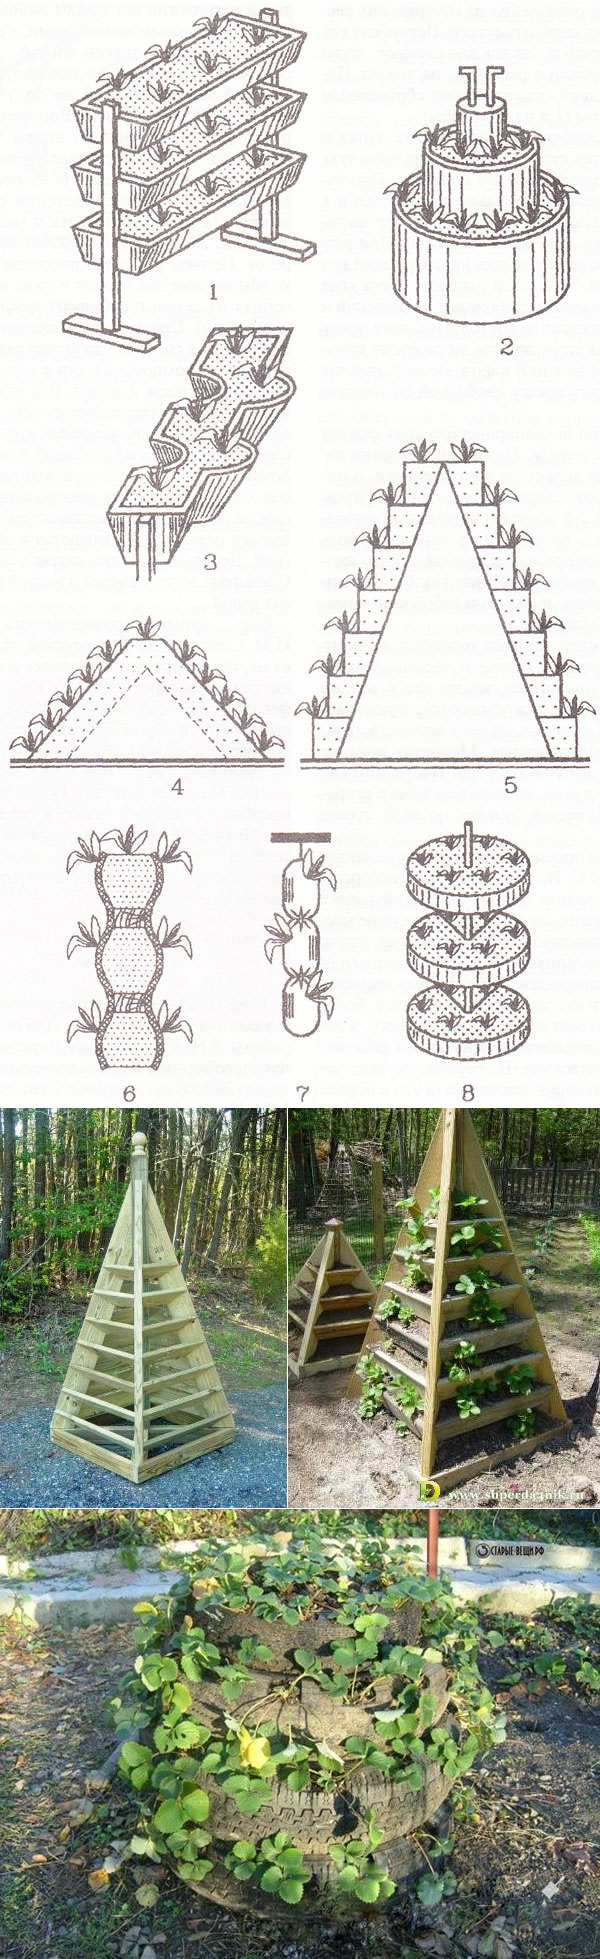 Пирамида для клубники своими руками (чертежи, материалы, раскрой)